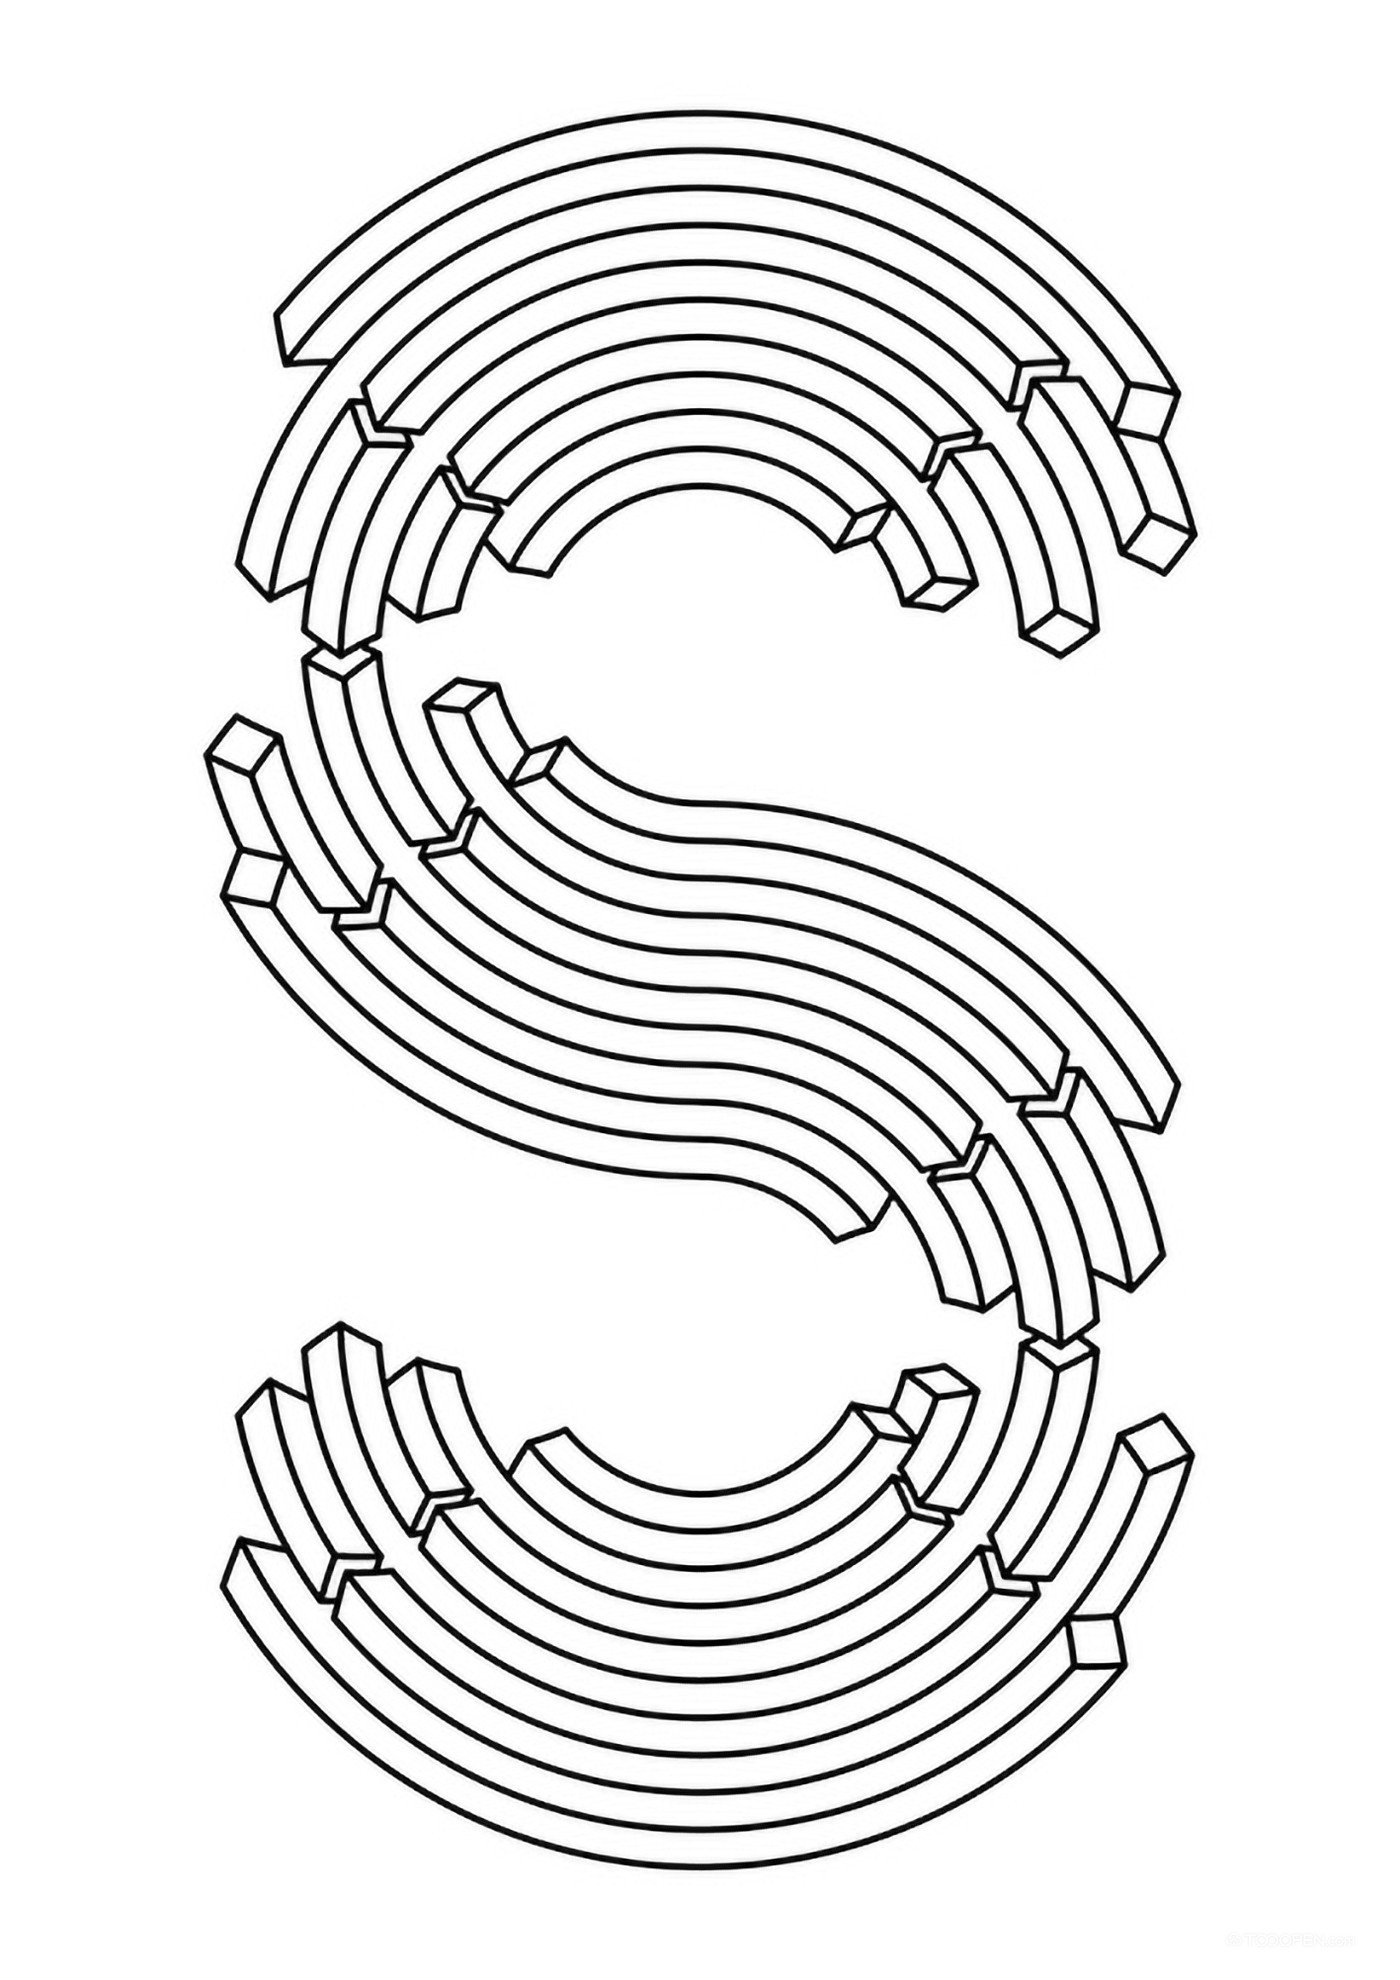 纽约字体艺术俱乐部年度展海报设计欣赏-04